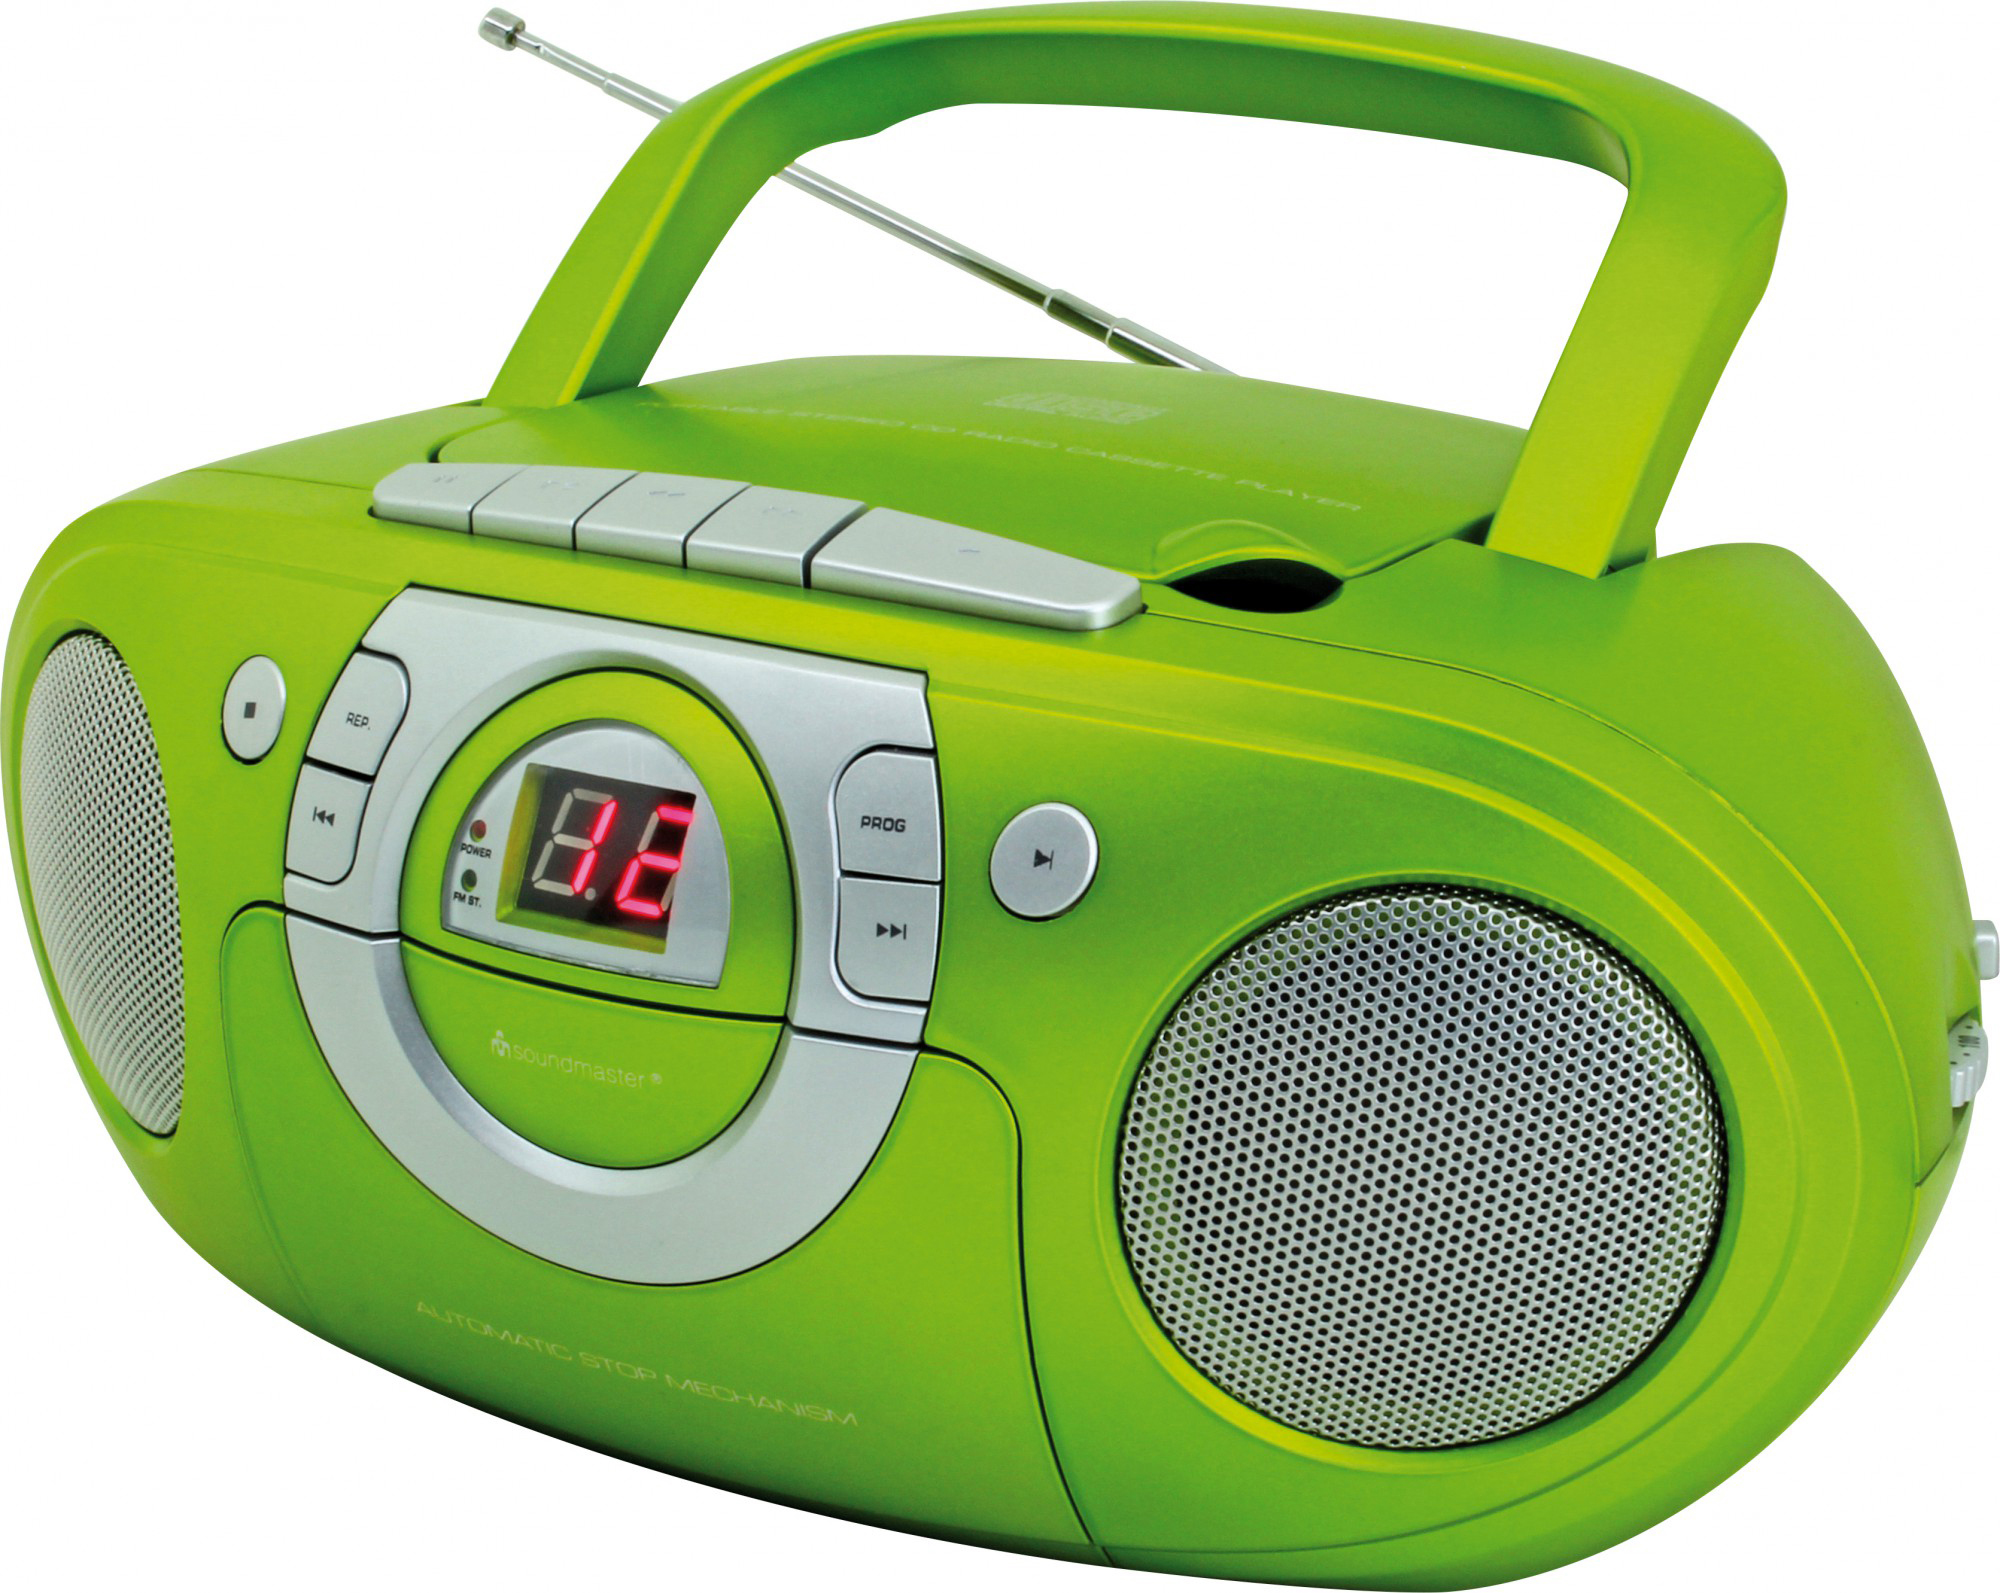 SOUNDMASTER SCD5100 mit Grün Radiorecorder, Kassettendeck